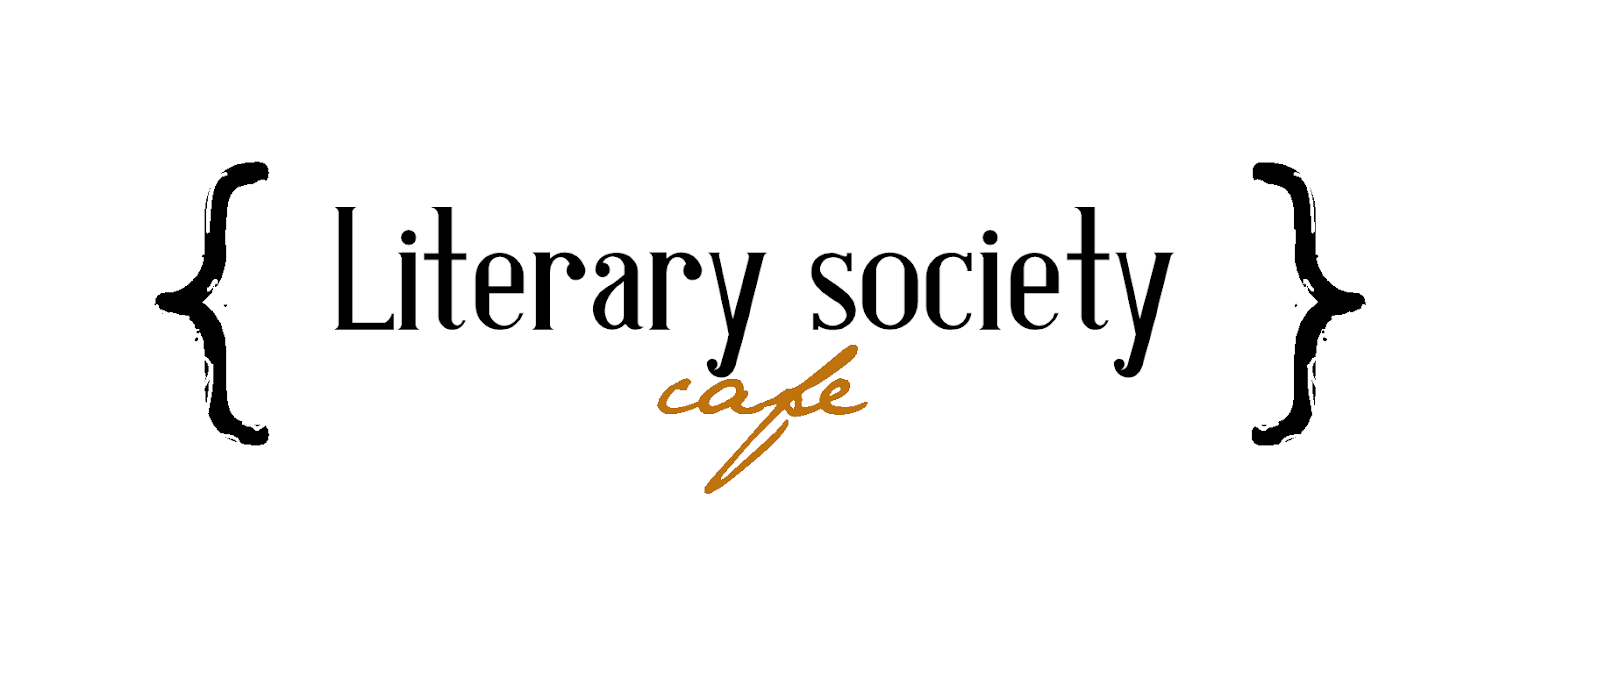 Literary society cafe